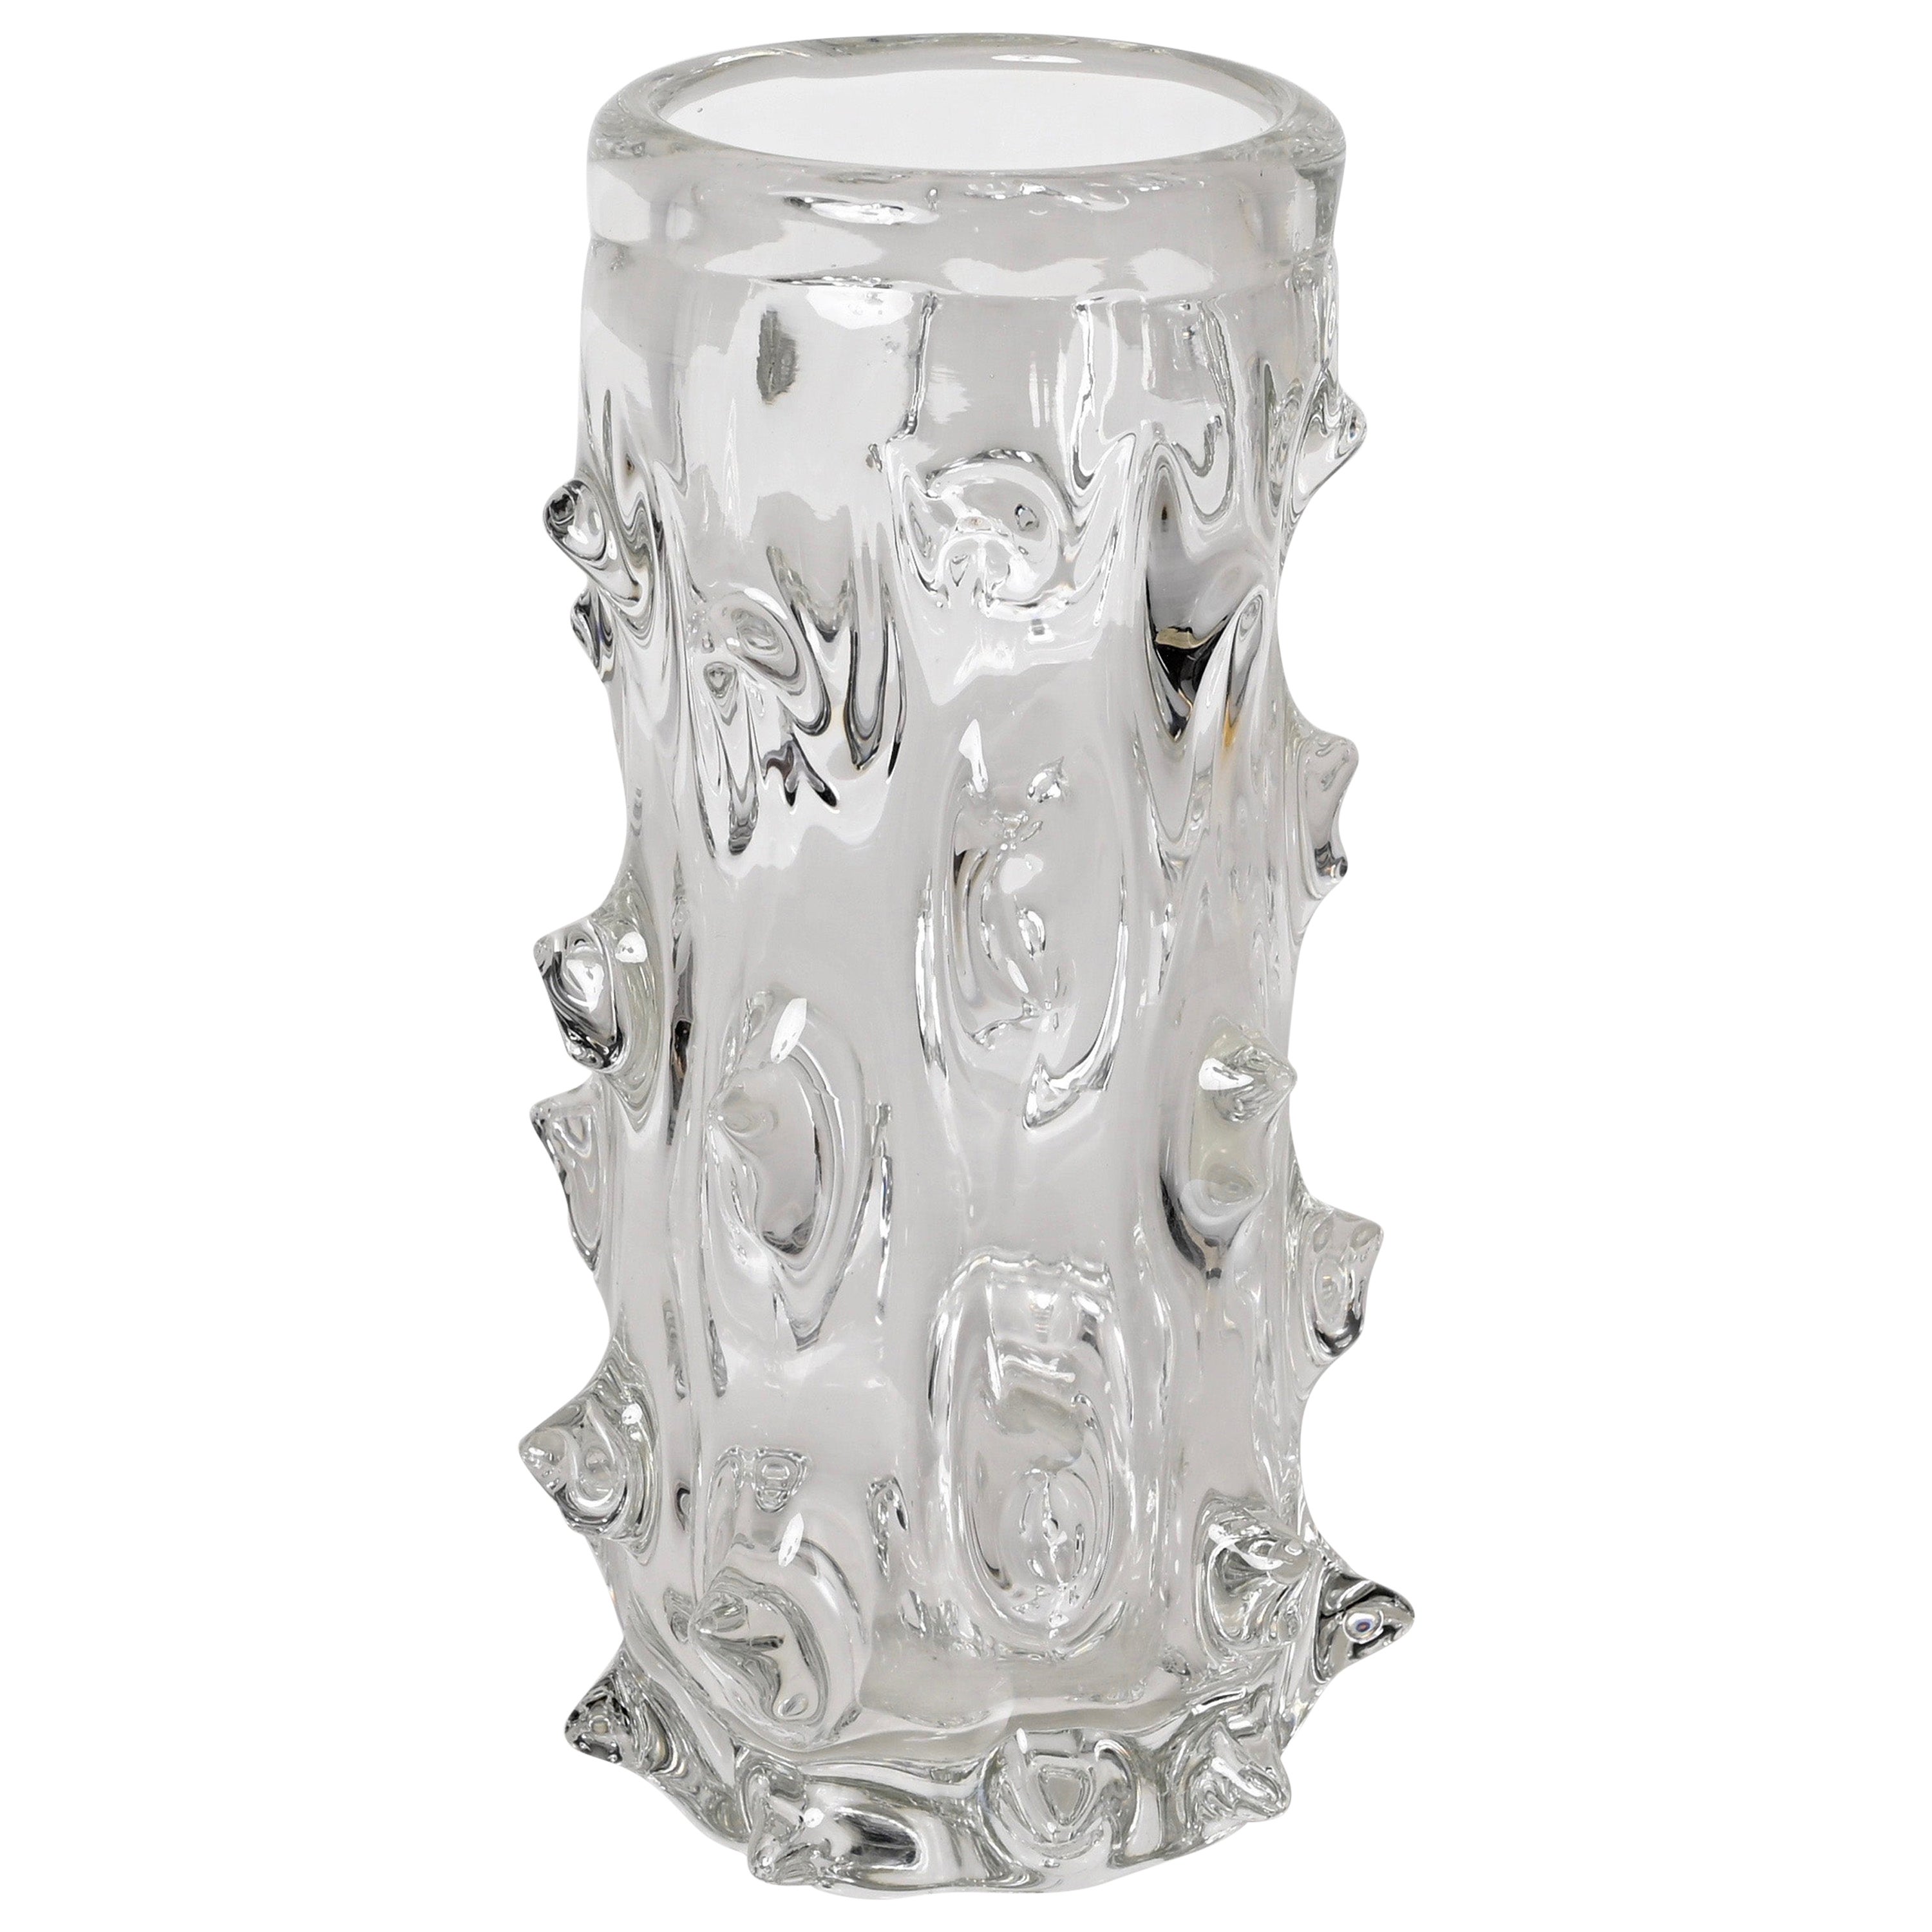 Murano "Mugnoni" Glas Dekorative Vase oder Blumentopf, von Barovier, Italien 1940er Jahre